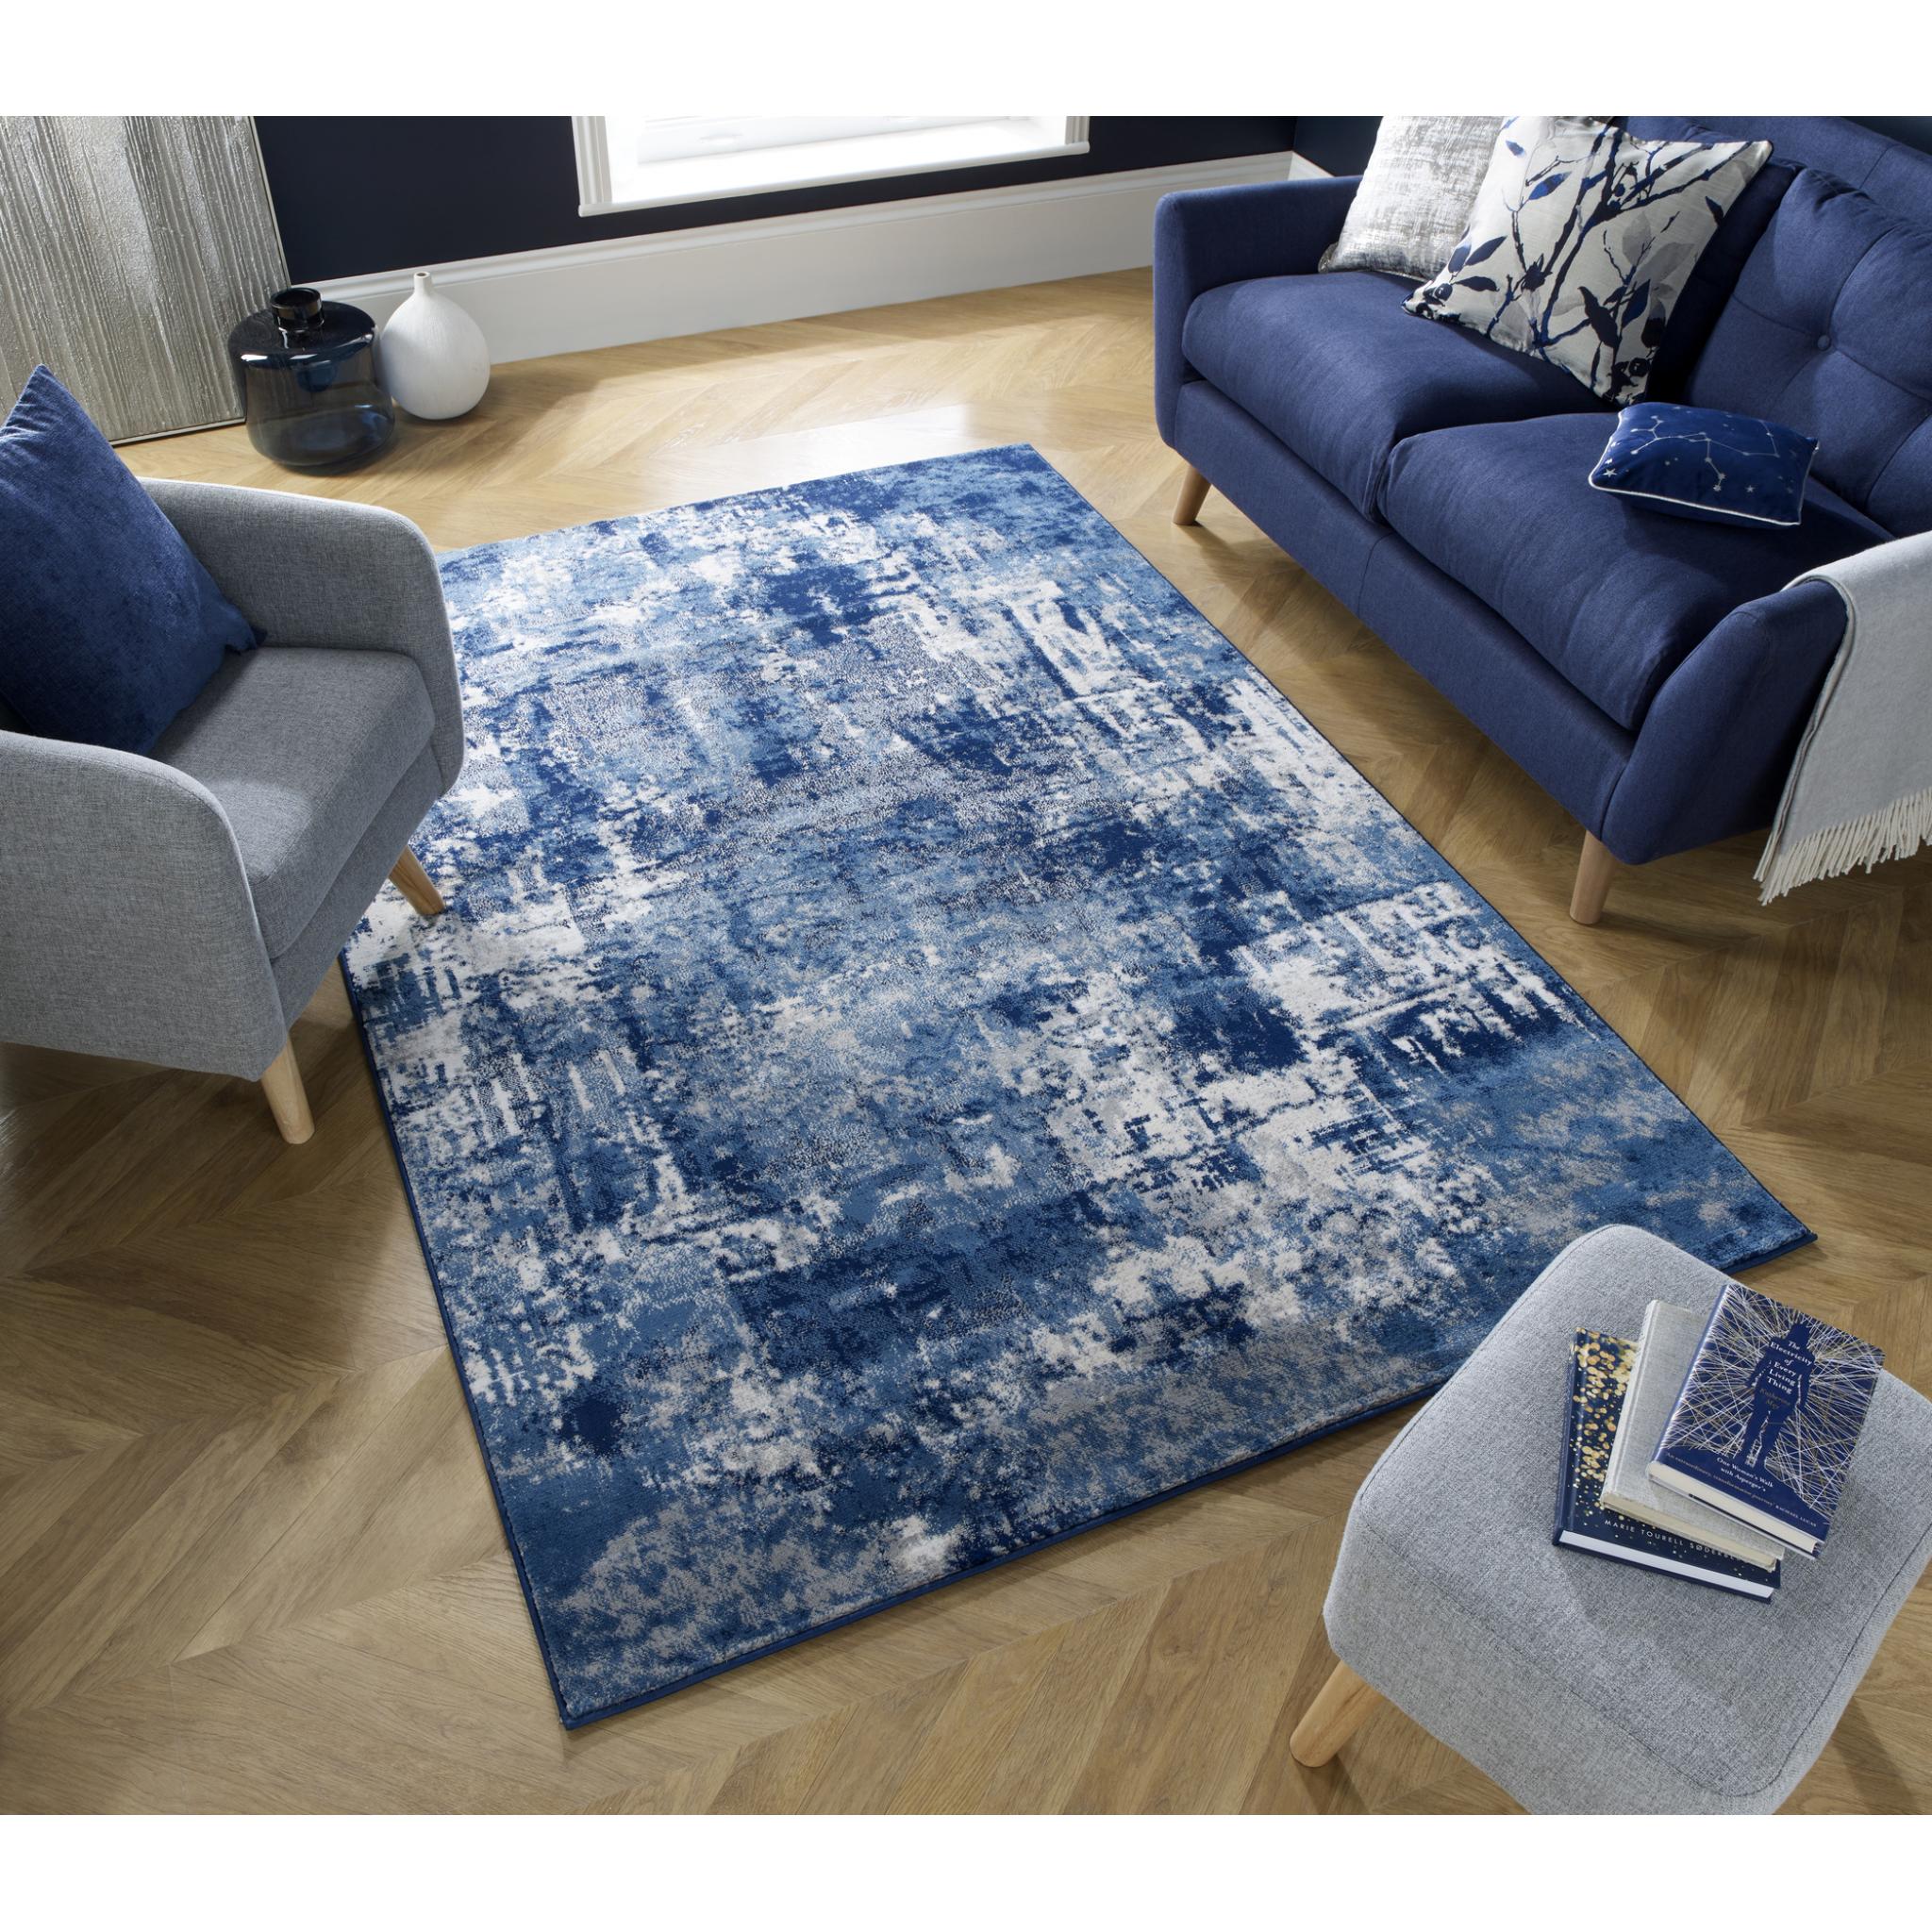 Với đôi mắt của bạn, tấm thảm màu teal blue rực rỡ sẽ nổi bật giữa không gian sống của bạn. Thiết kế đơn giản và màu sắc trang nhã tạo nên một không gian tươi mới, đầy năng lượng.